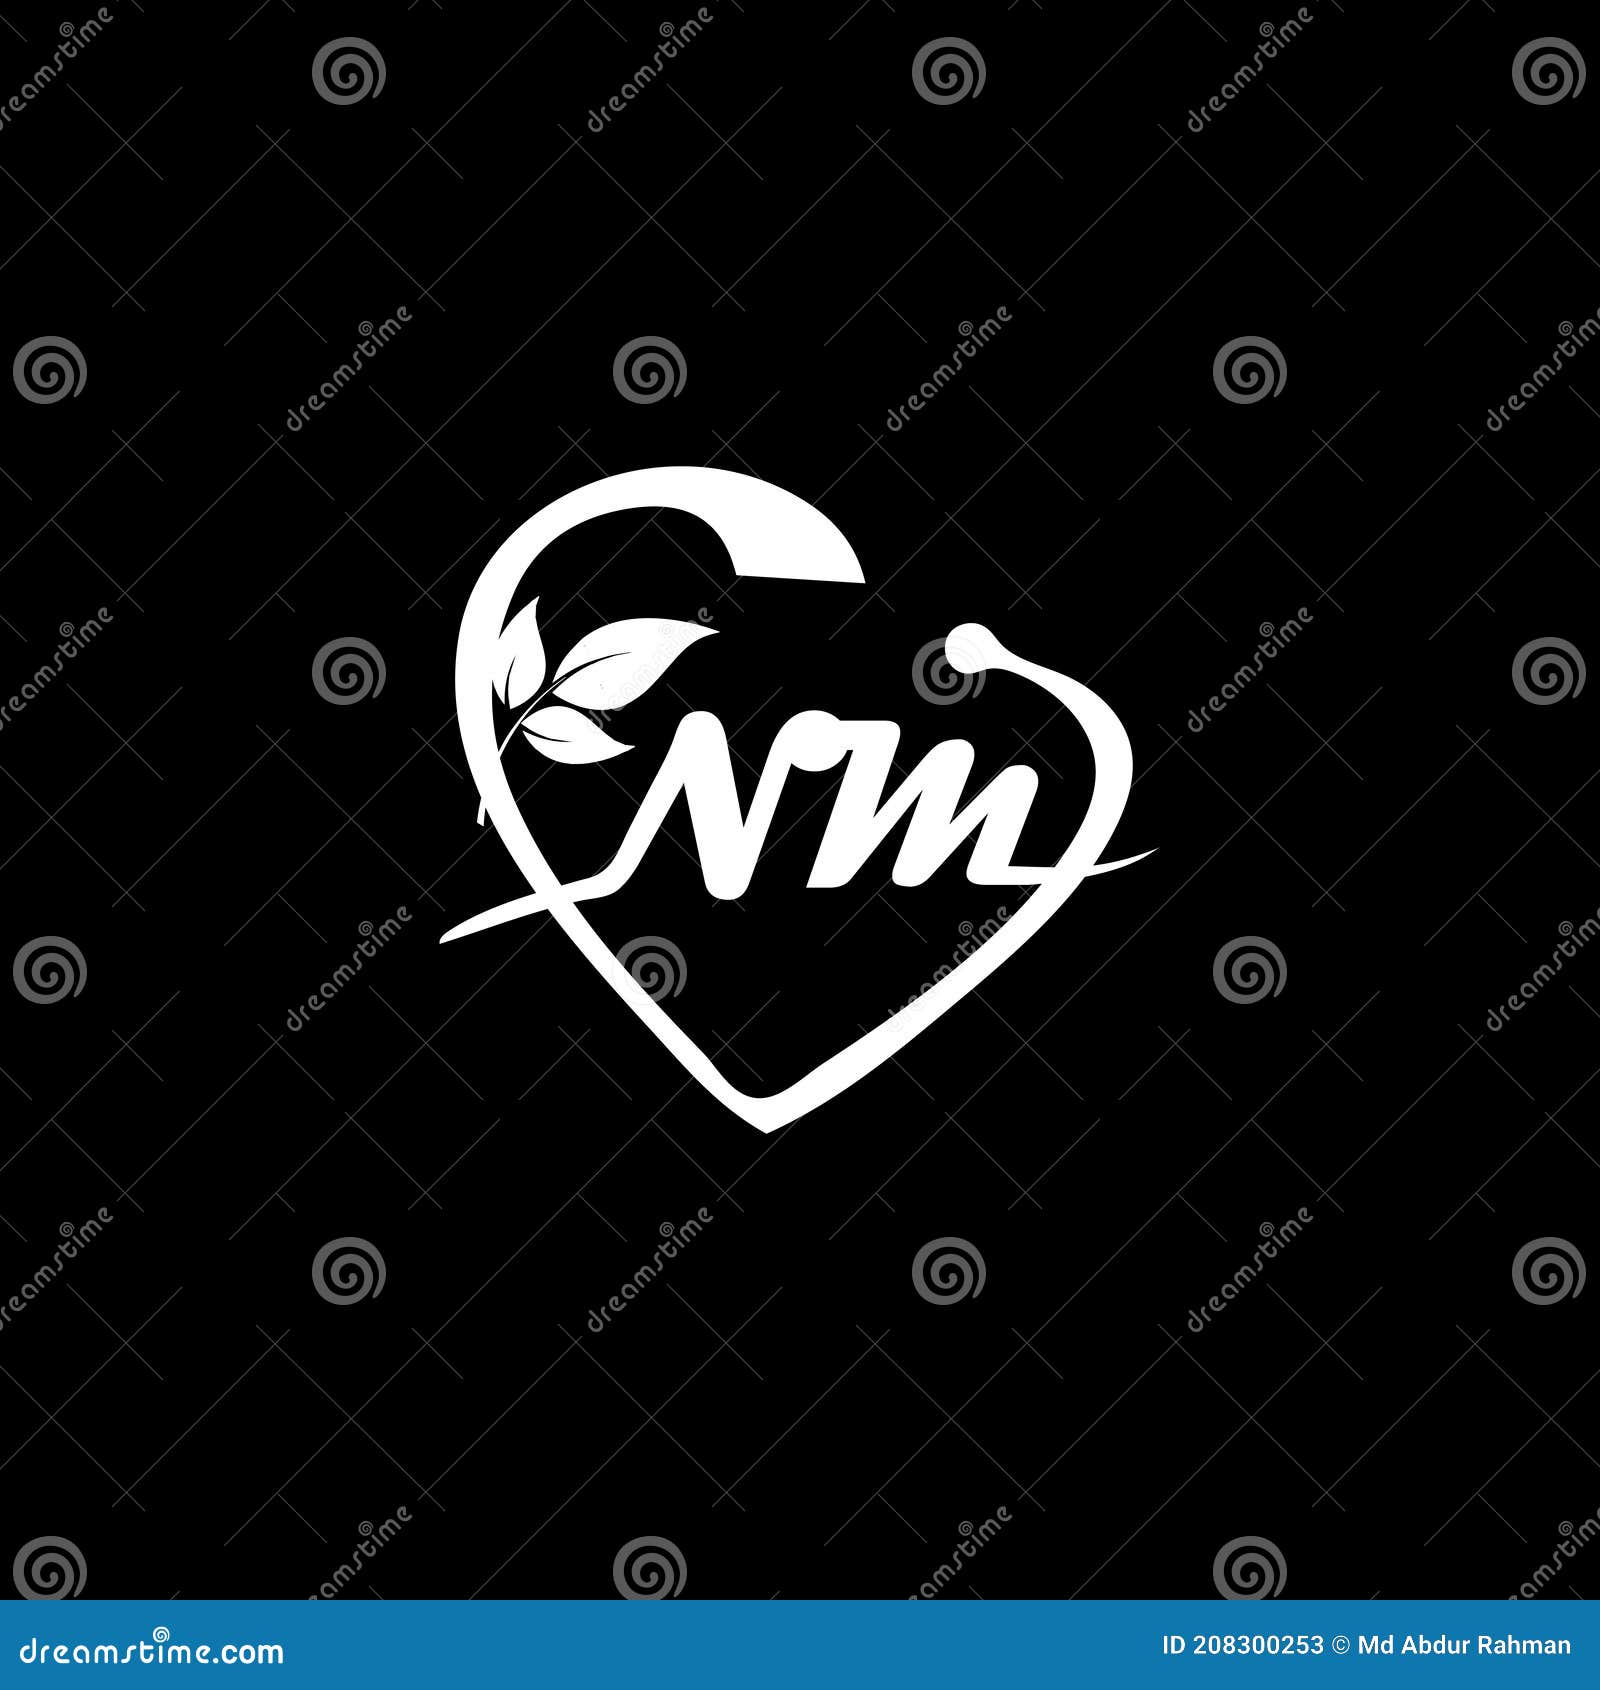 Channel V Logo PNG Transparent & SVG Vector - Freebie Supply